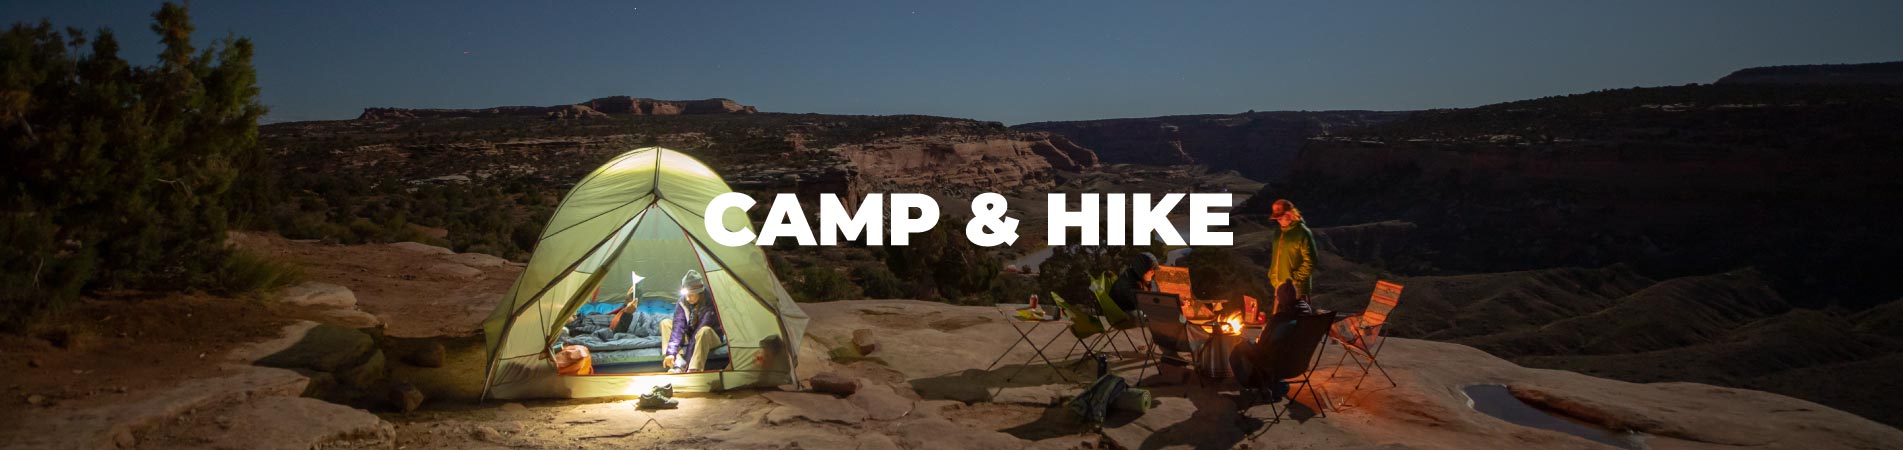 camp-hike-banner.jpg